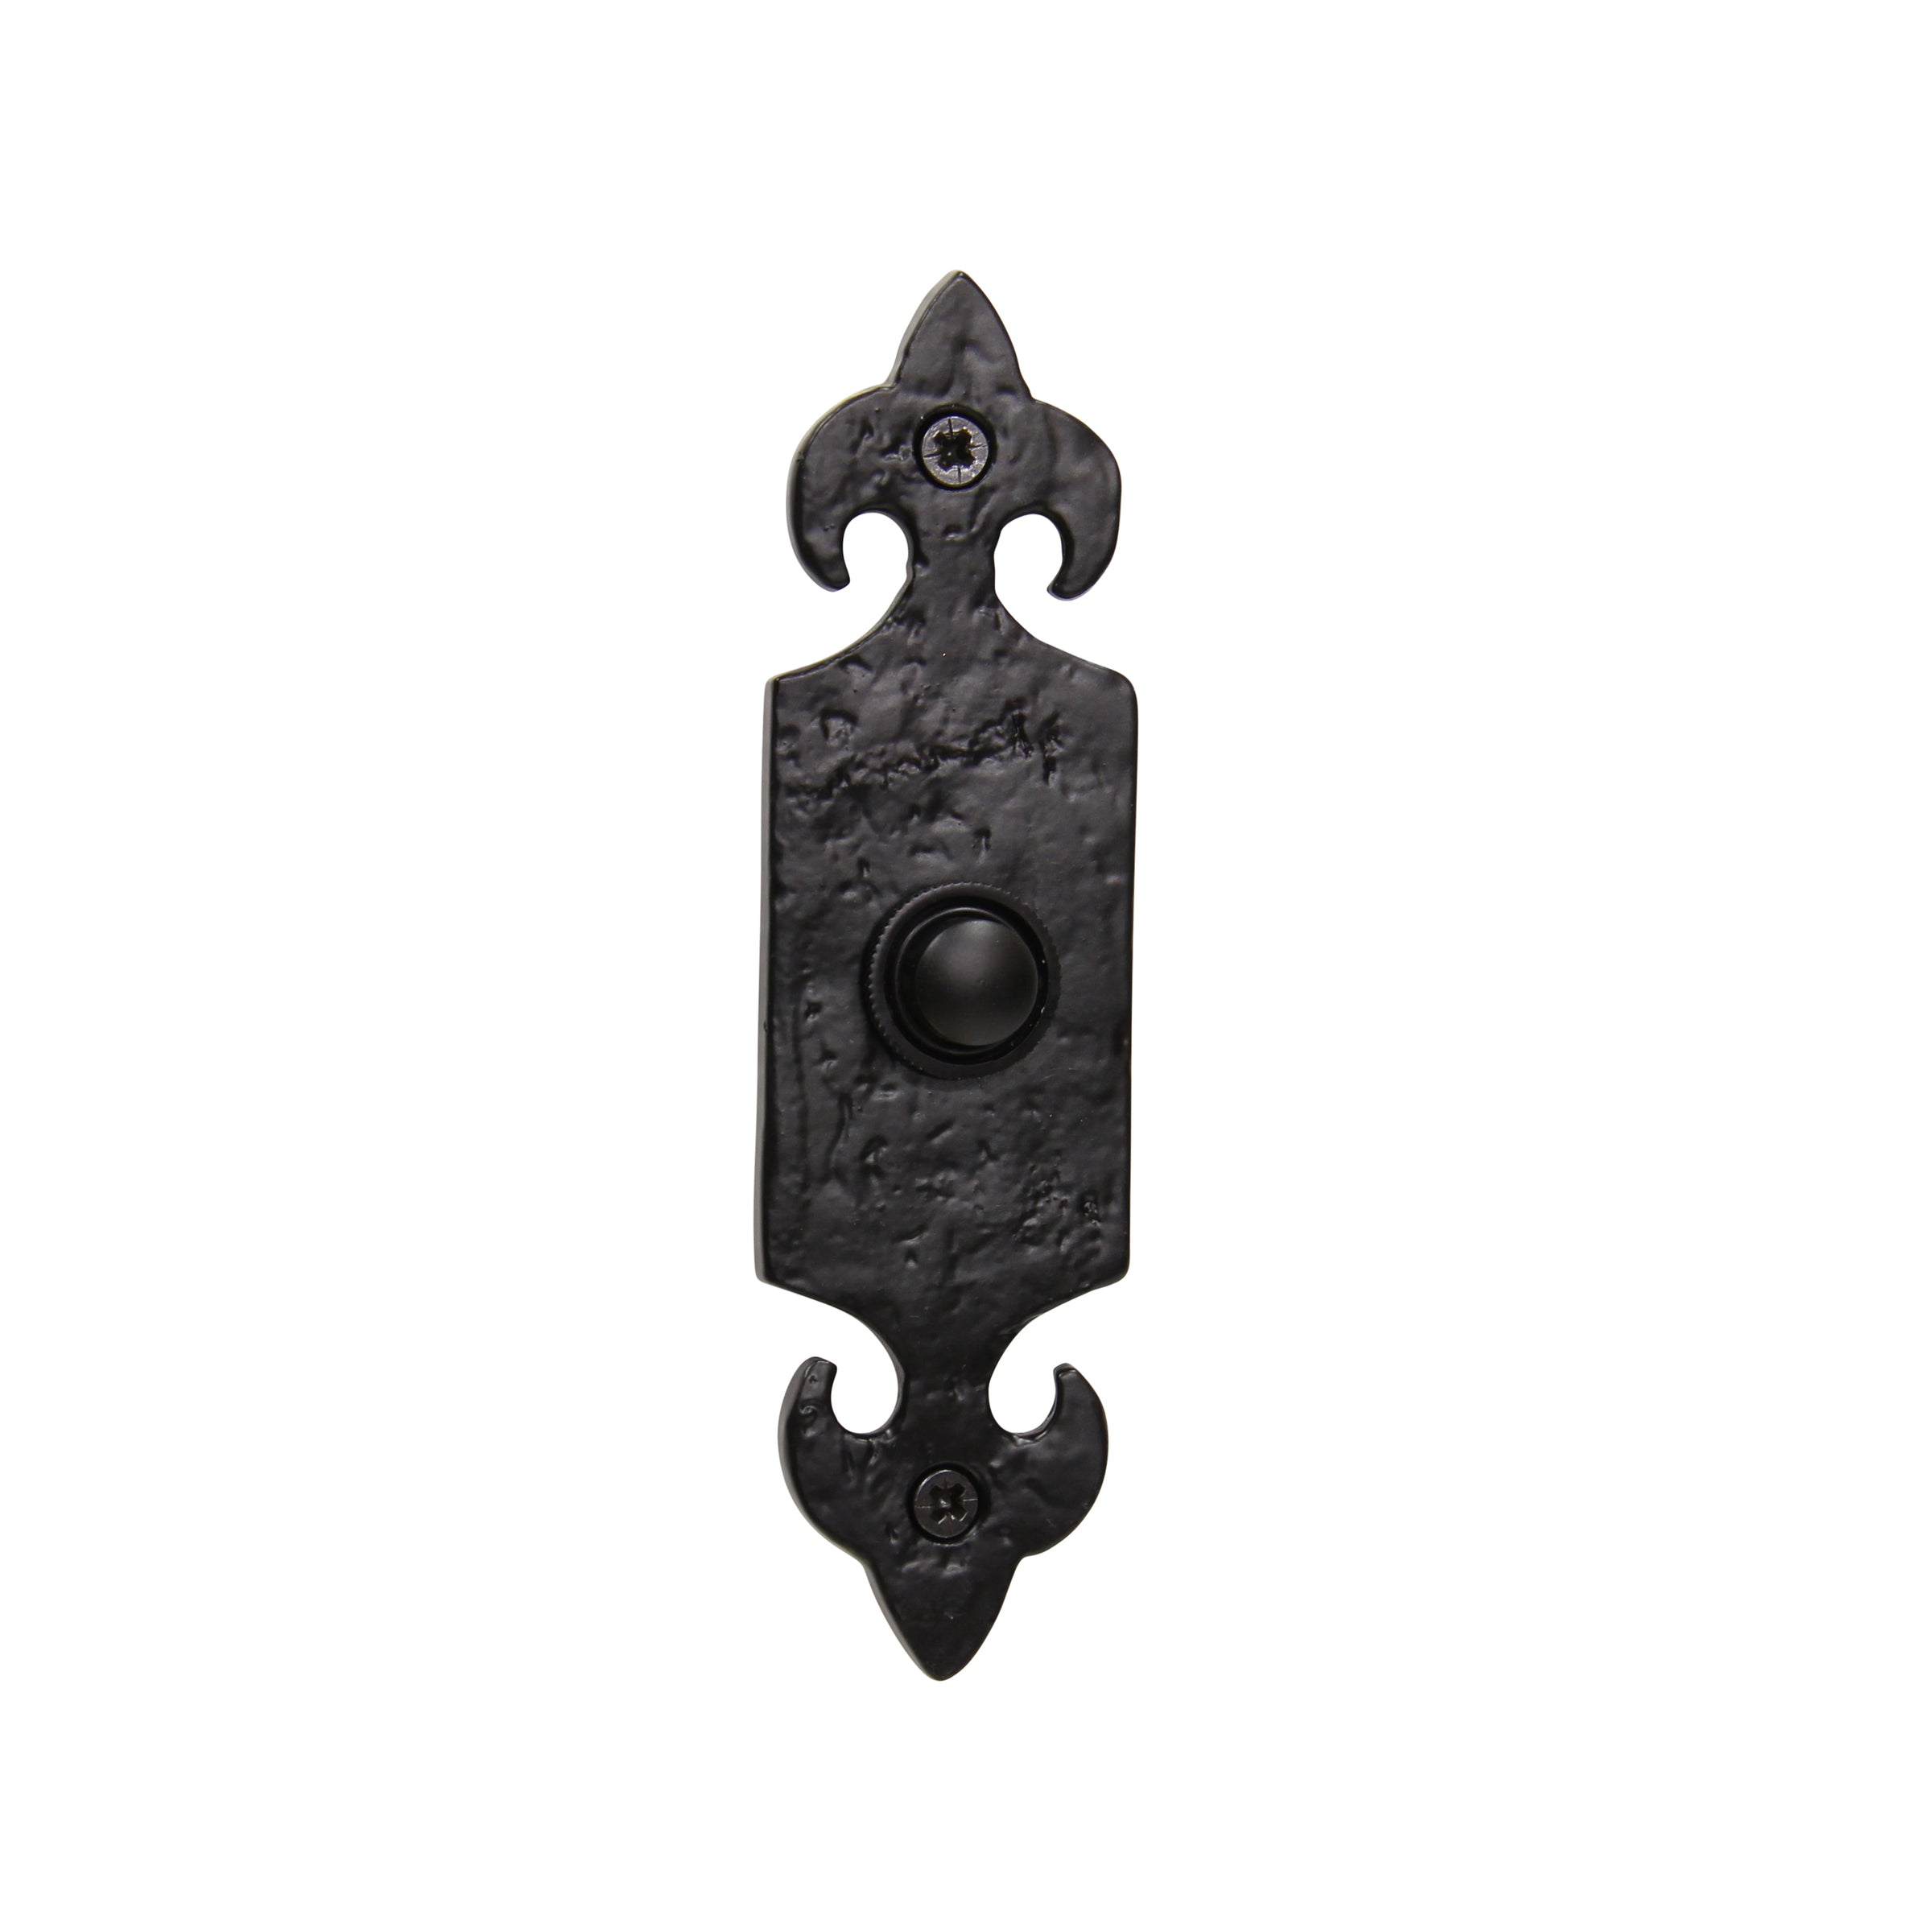 Decorative Doorbell Button | Wayfair